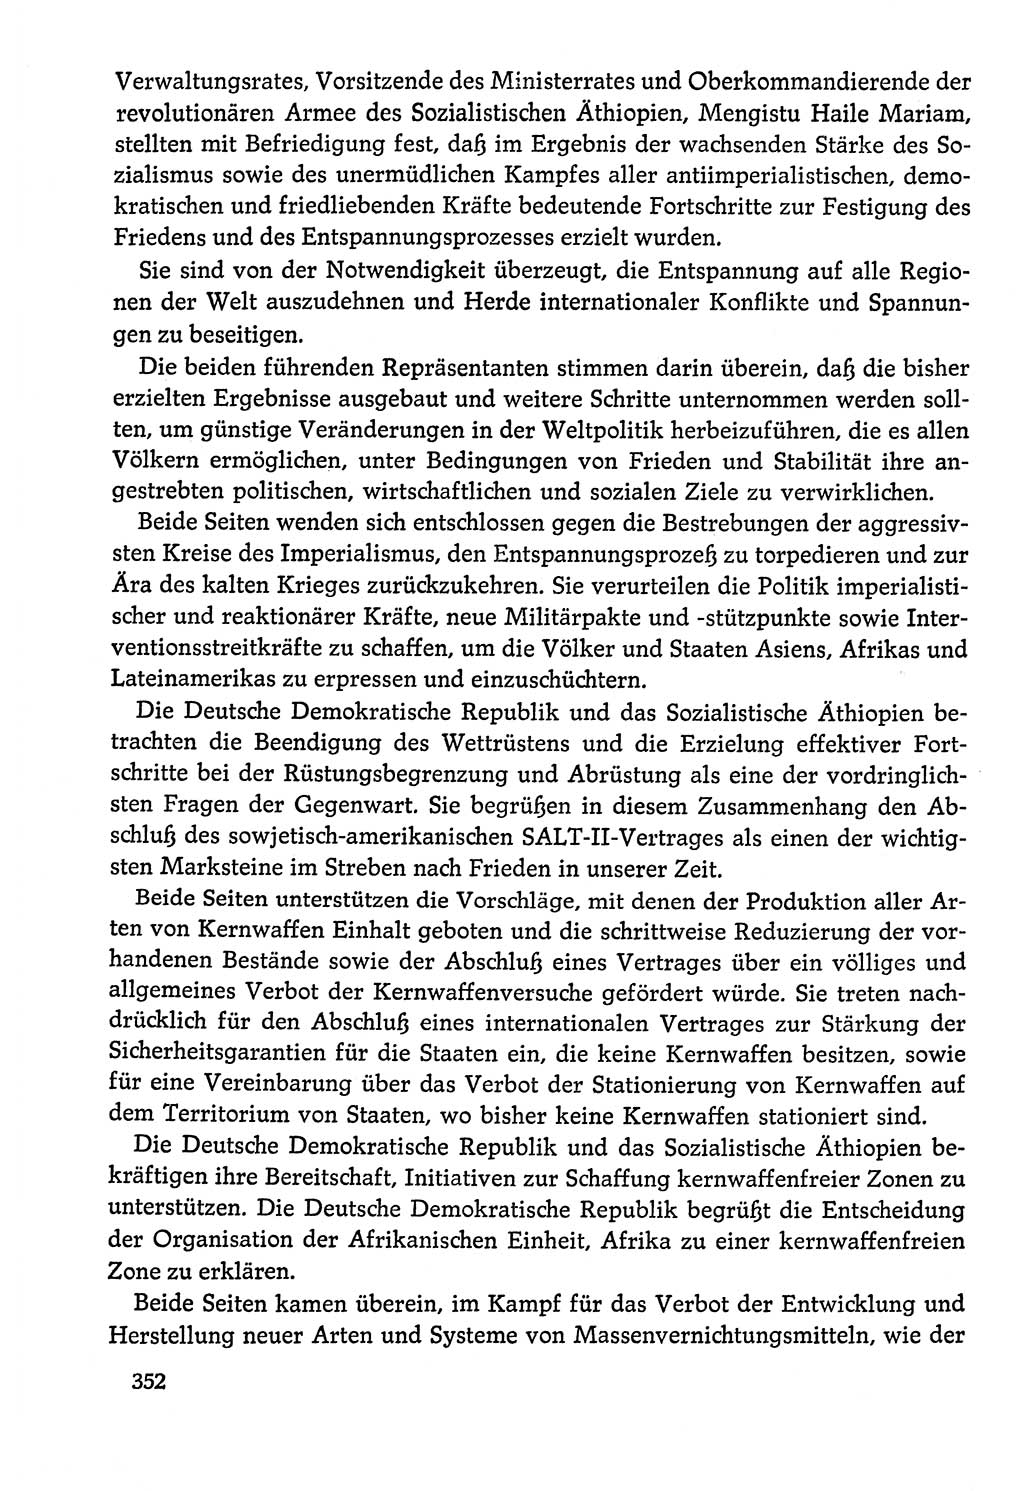 Dokumente der Sozialistischen Einheitspartei Deutschlands (SED) [Deutsche Demokratische Republik (DDR)] 1978-1979, Seite 352 (Dok. SED DDR 1978-1979, S. 352)